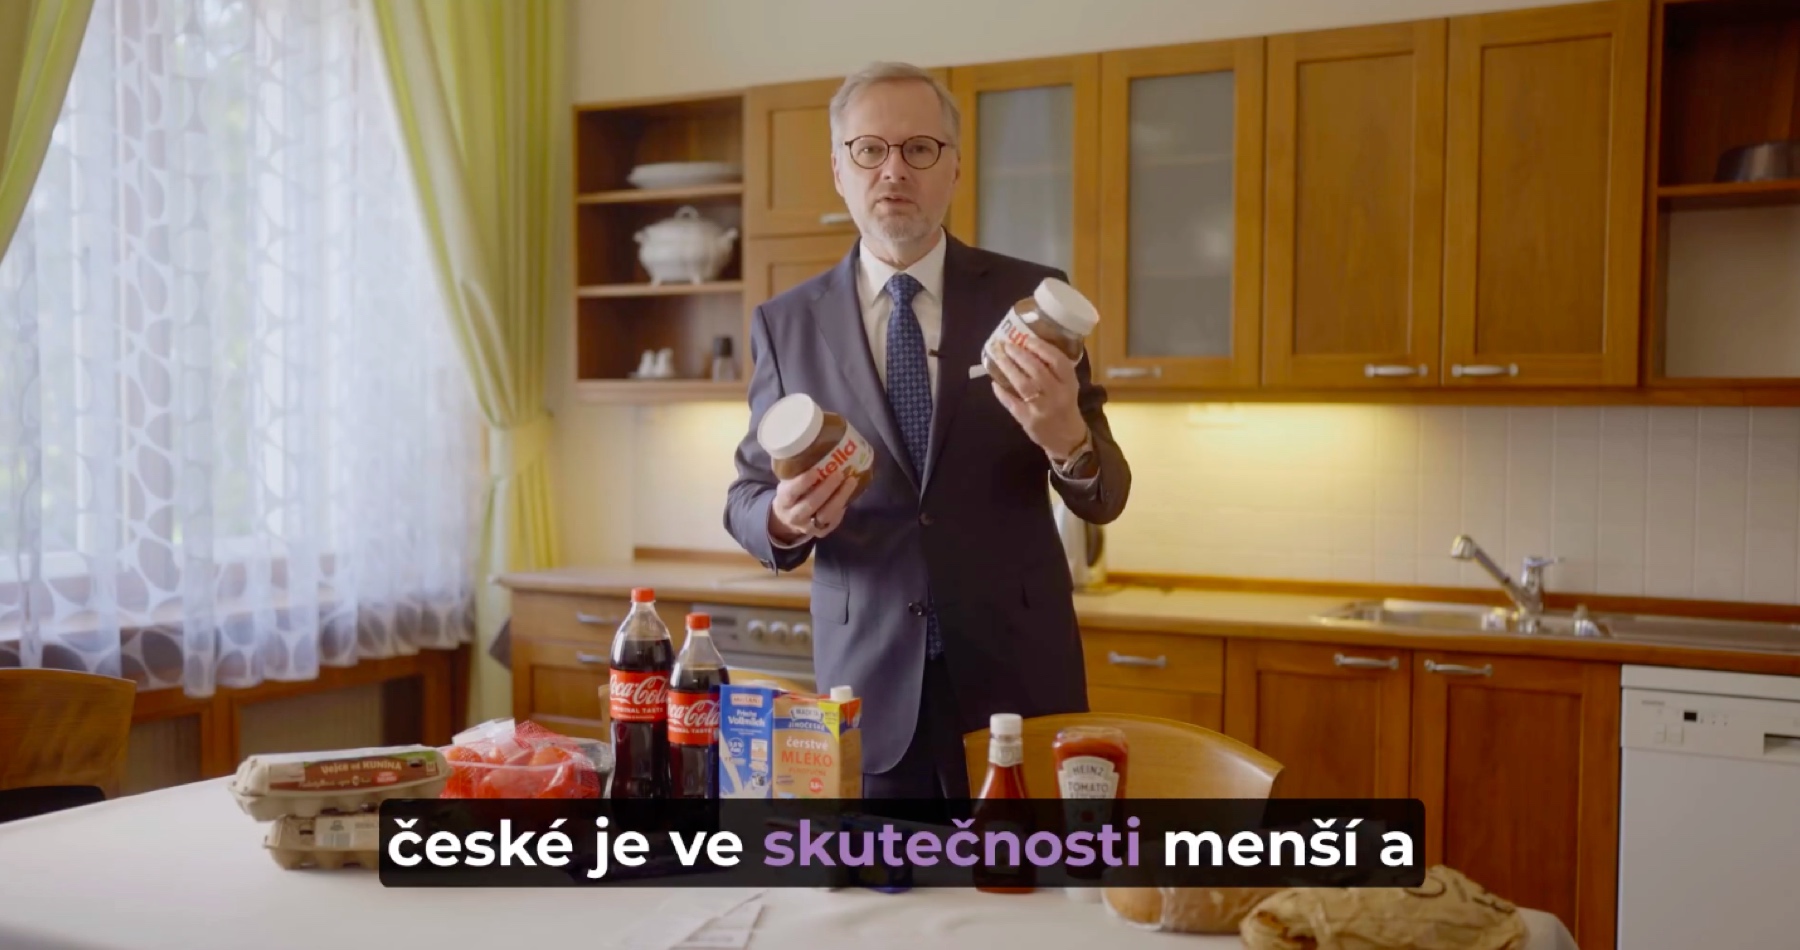 VIDEO: Český premiér Fiala si začiatkom novembra spravil výlet do Nemecka za Nutellou a porovnával šialené ceny v českých obchodoch. Poliakom medzitým pri pohľade na účet za nákup u našich susedov spadla sánka